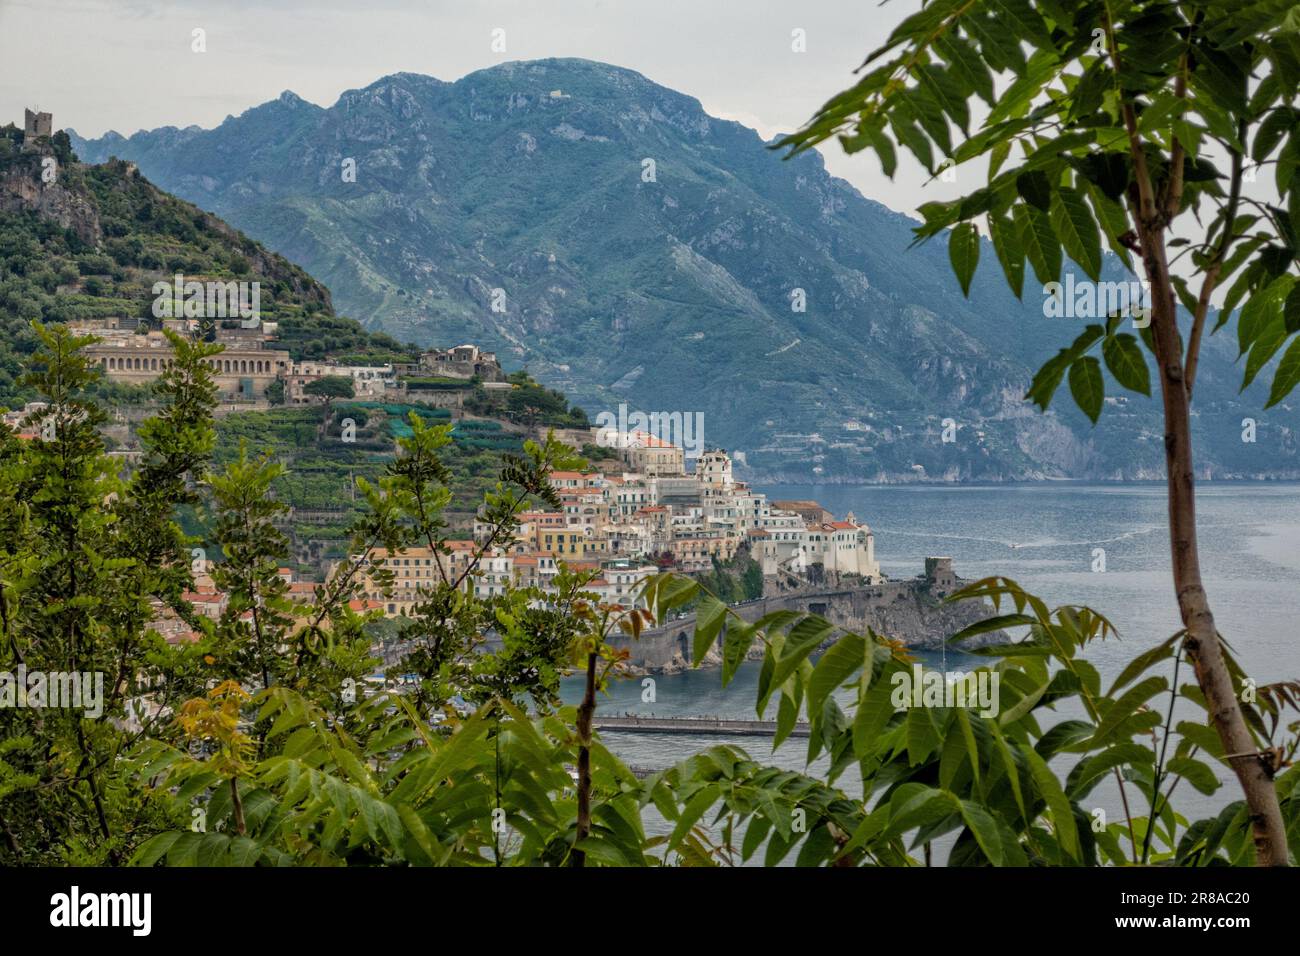 Ville d'Amalfi sur la côte amalfitaine, Campanie, Italie Banque D'Images